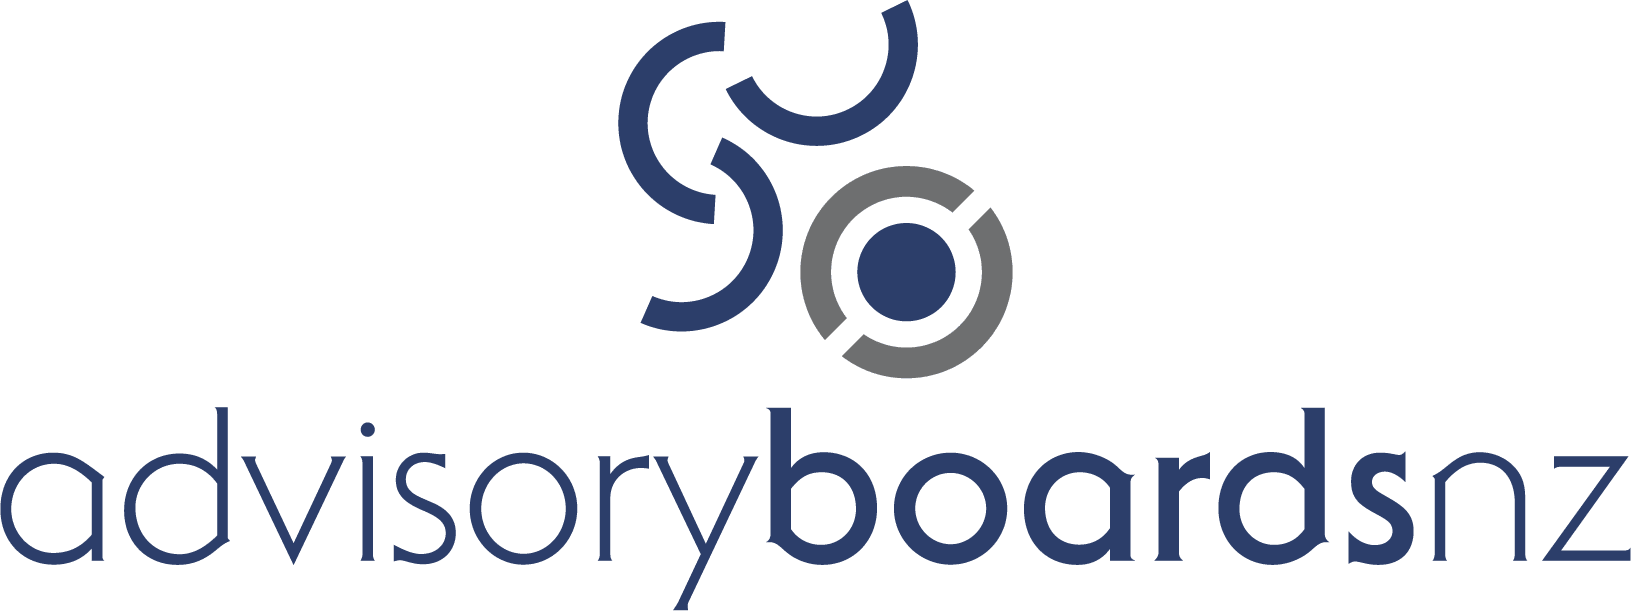 AdvisoryBoards-logo